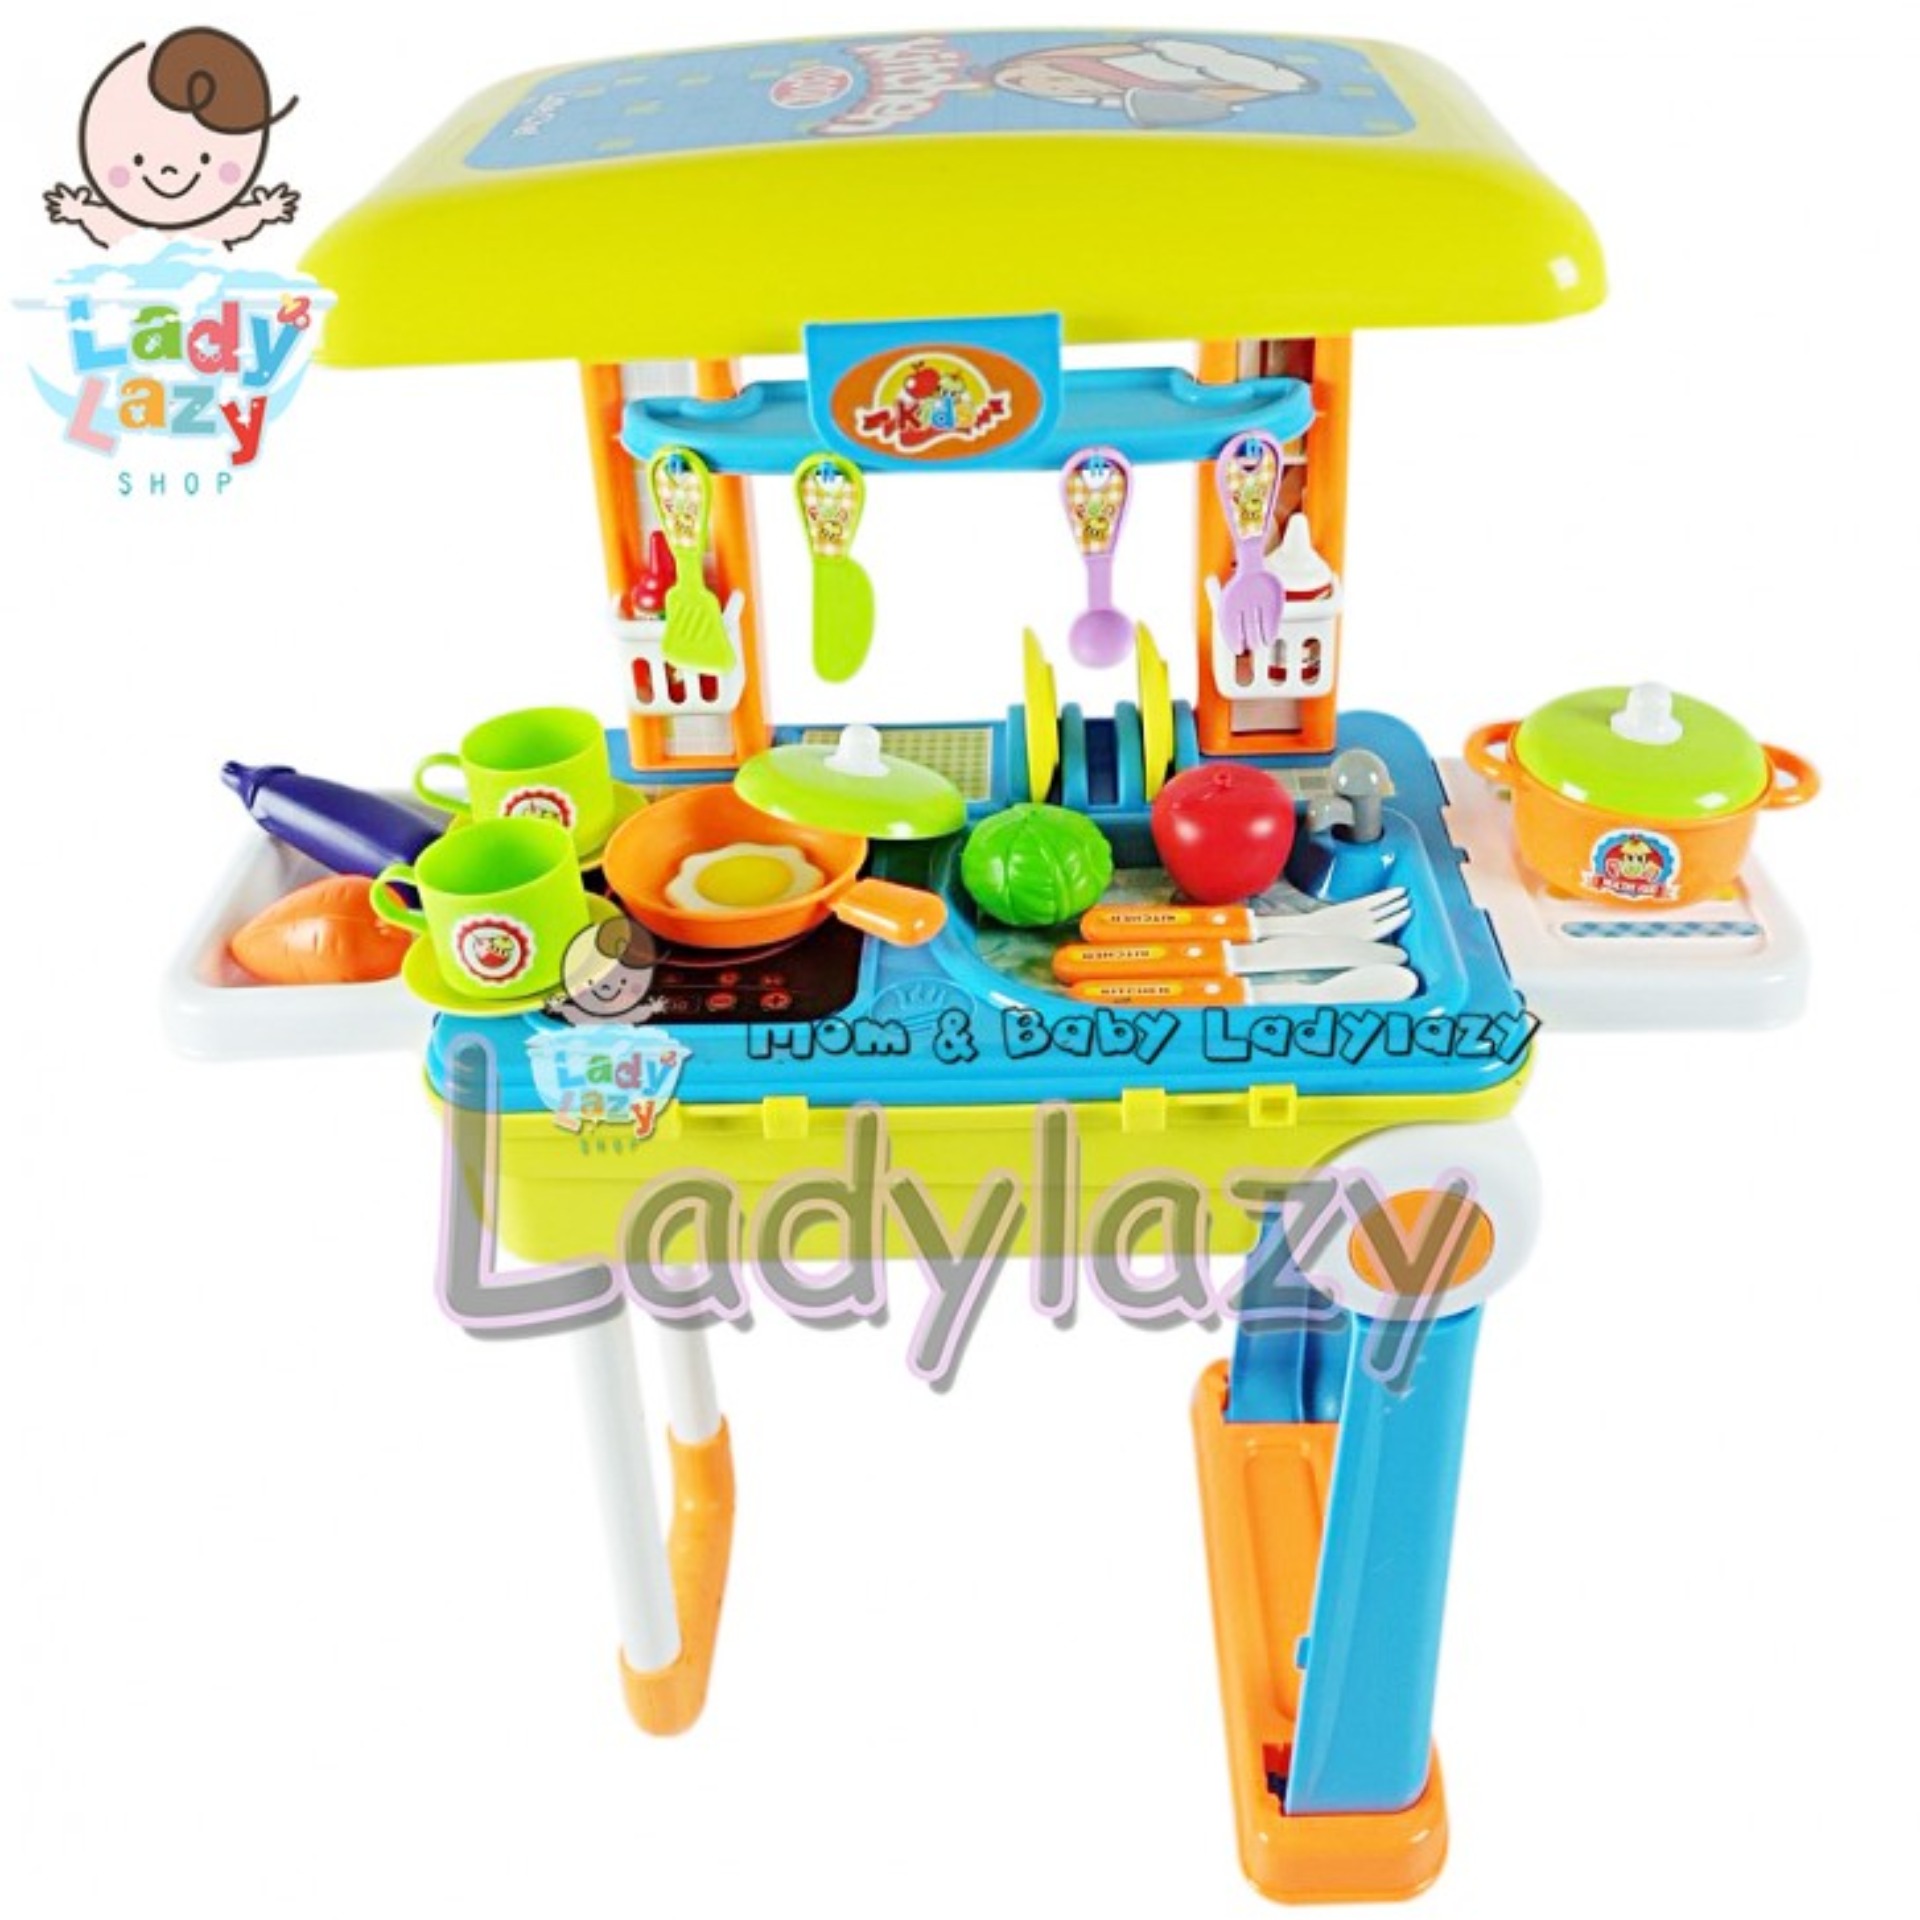 Ladylazy ชุดครัว Kids 2 in 1 เป็นกระเป๋าล้อลากได้ พกพาง่าย No.008-926 สีเหลือง